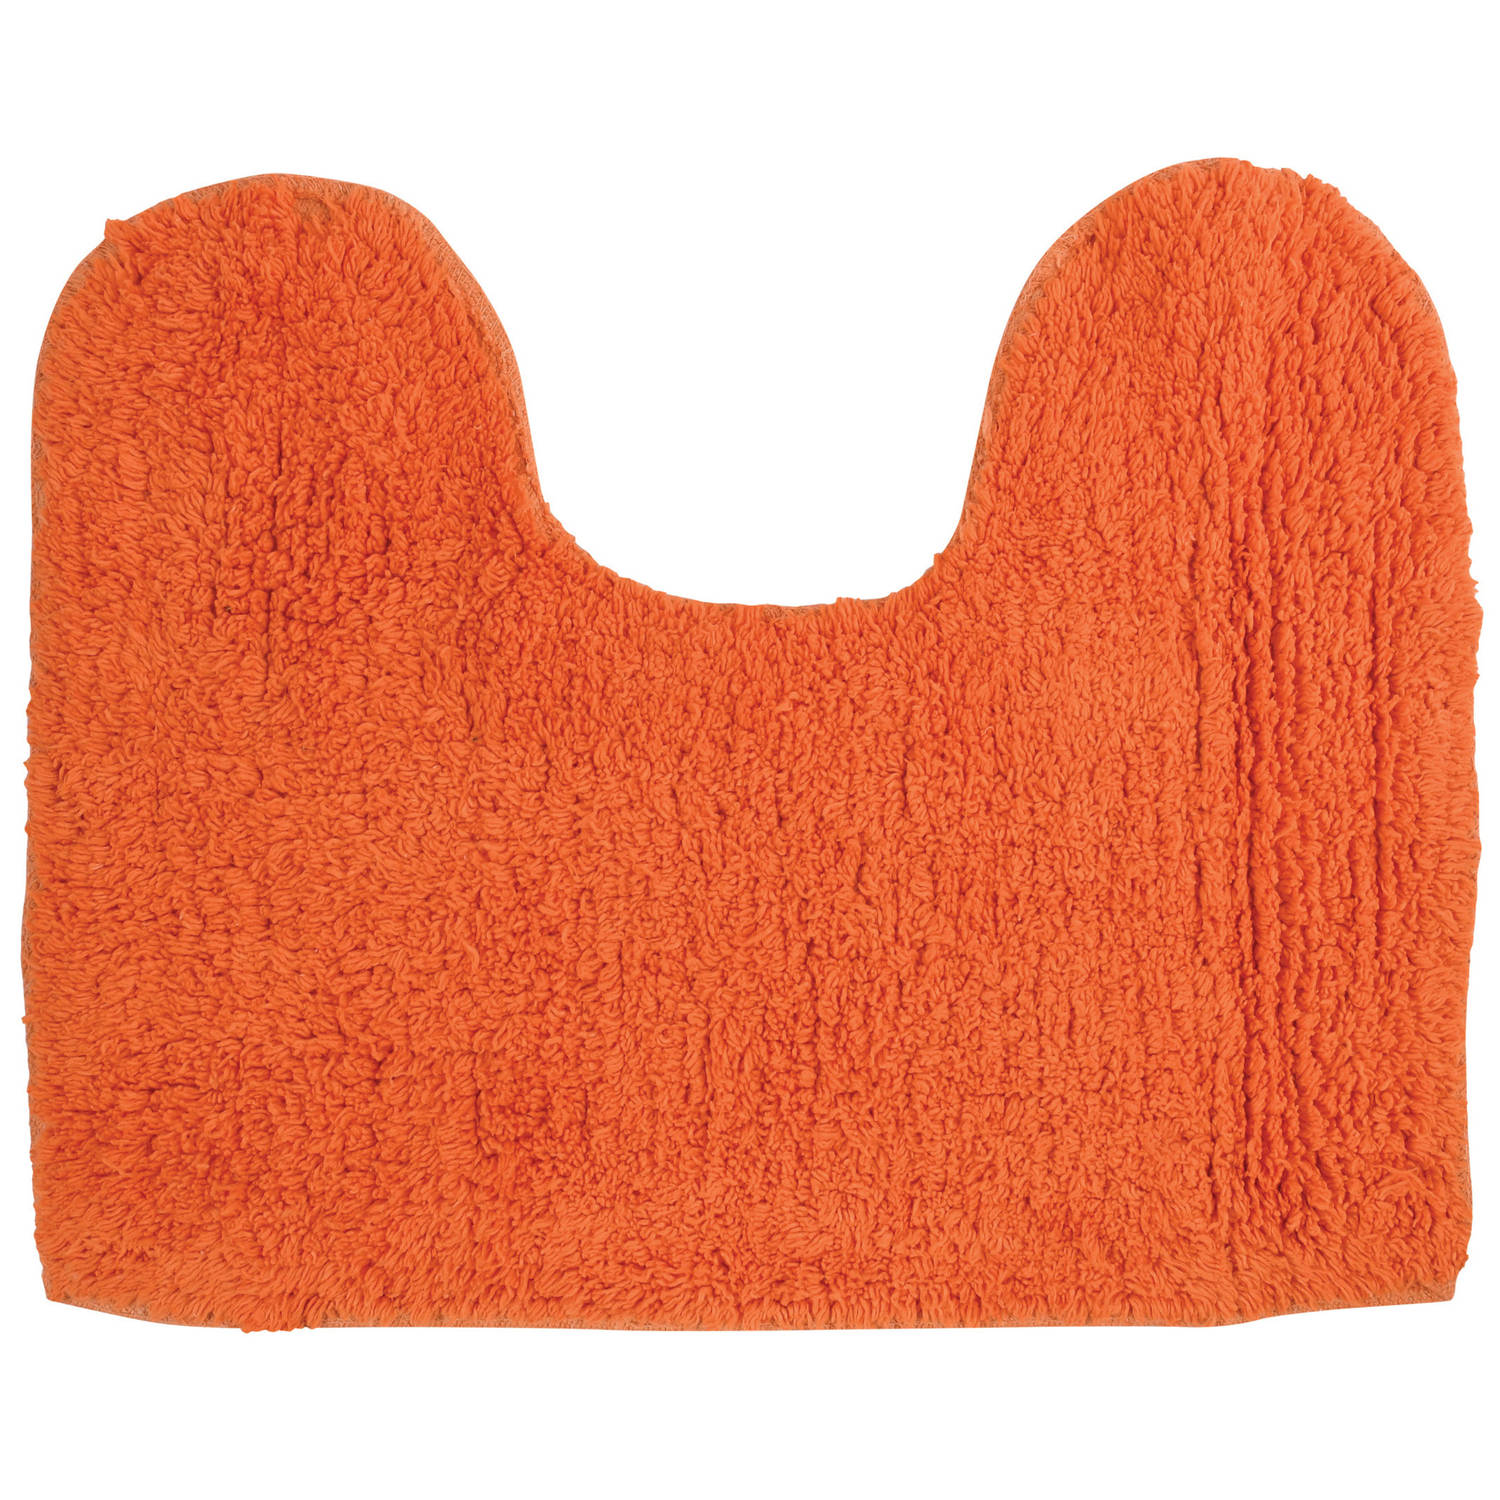 MSV WC/Badkamerkleed/badmat - voor op de vloer - oranje - 45 x 35 cm - polyester/katoen